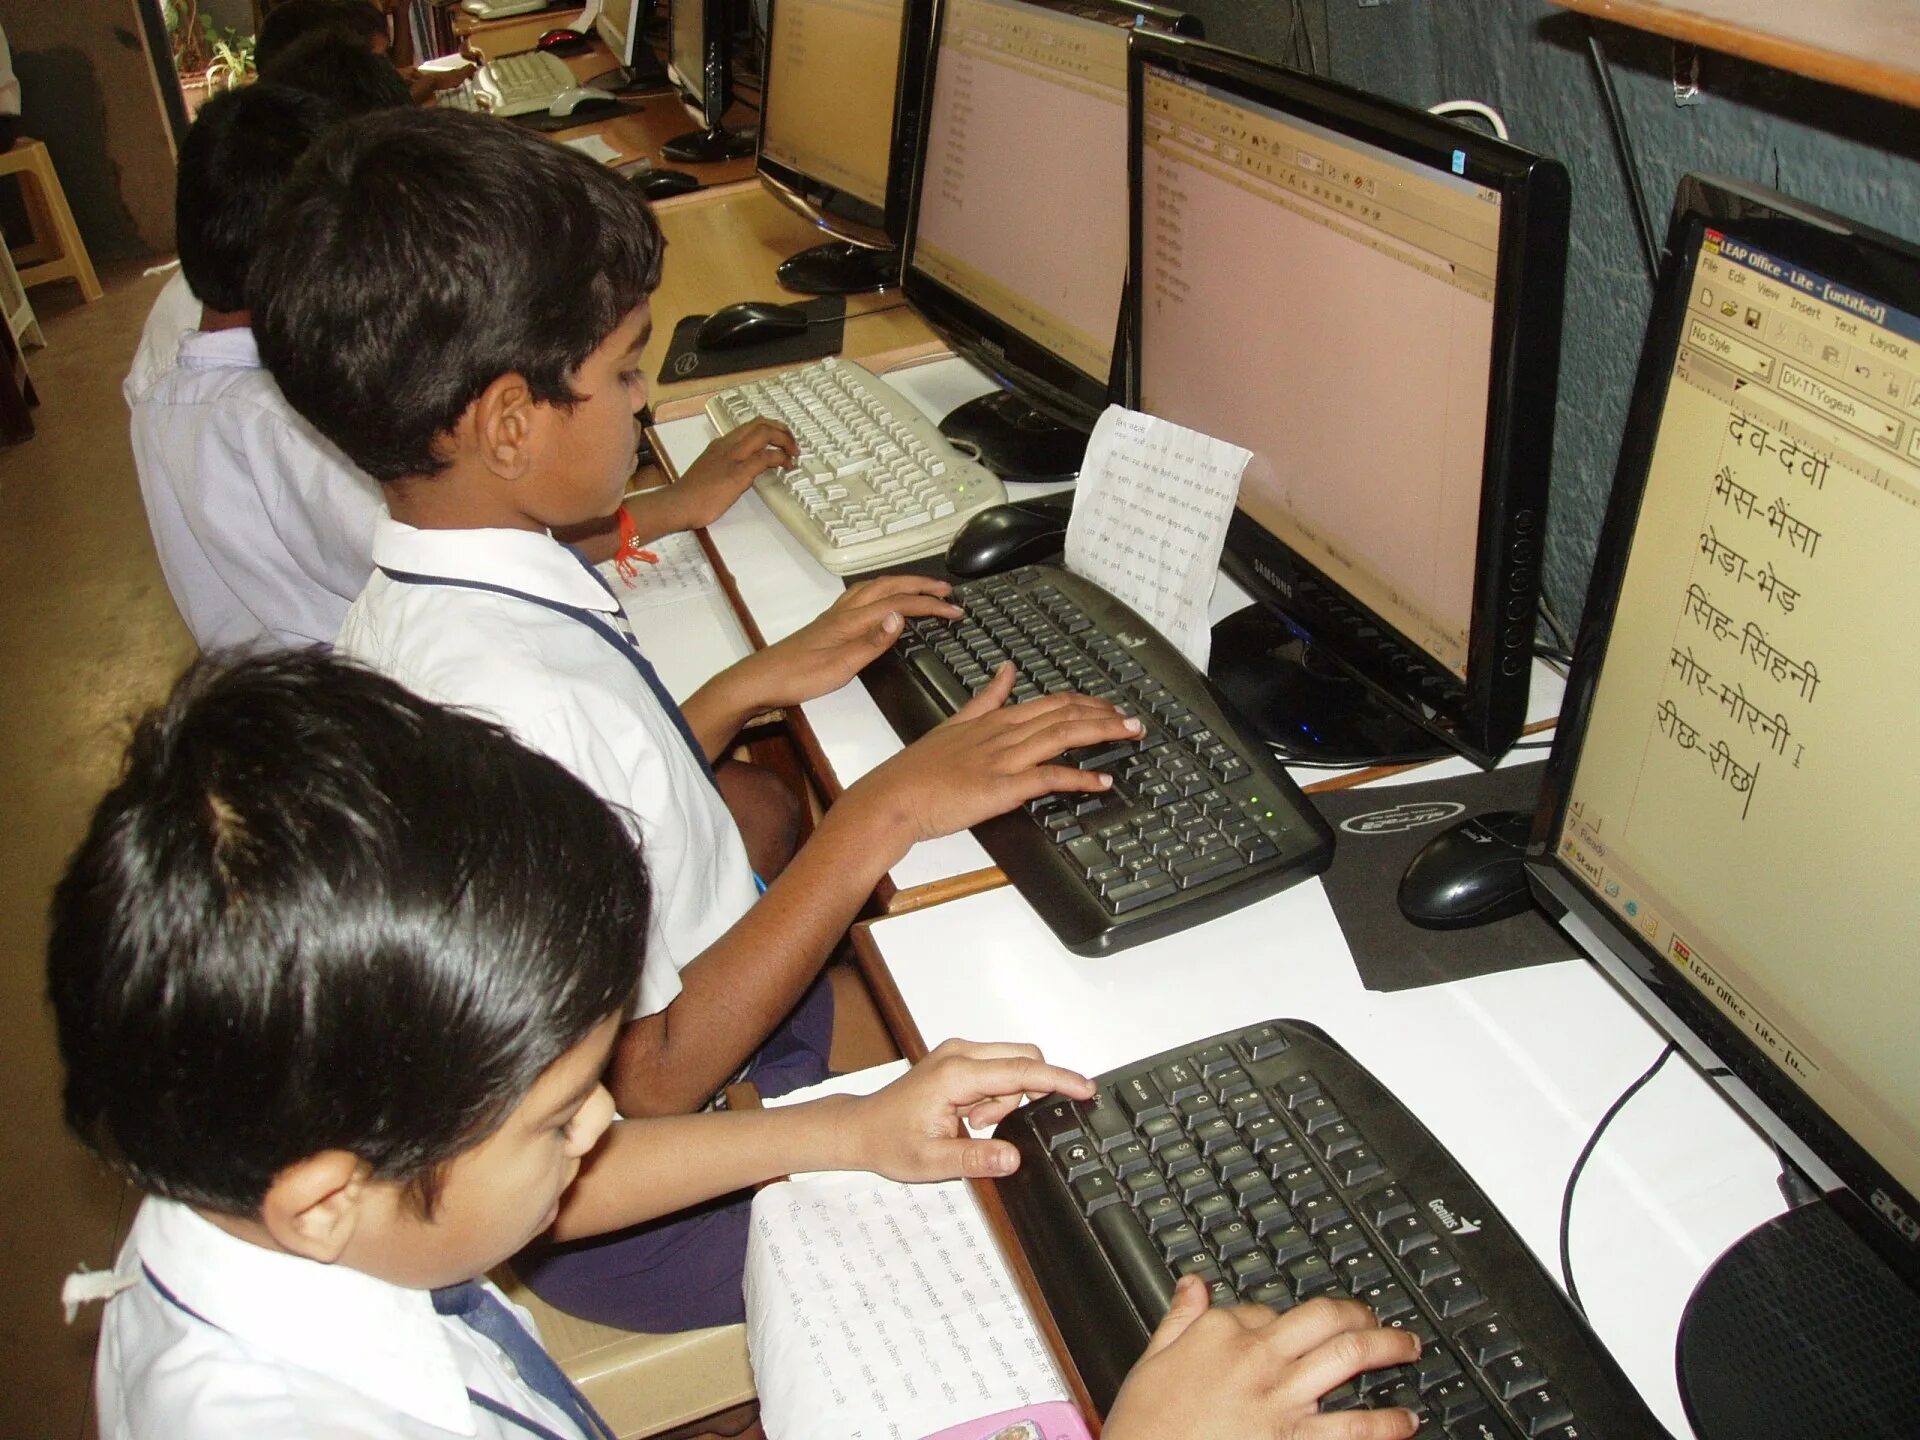 Компьютер для детей. Индийские дети в школе. Компьютеры в образовании. Дети индусов с компьютером. Comparing schools